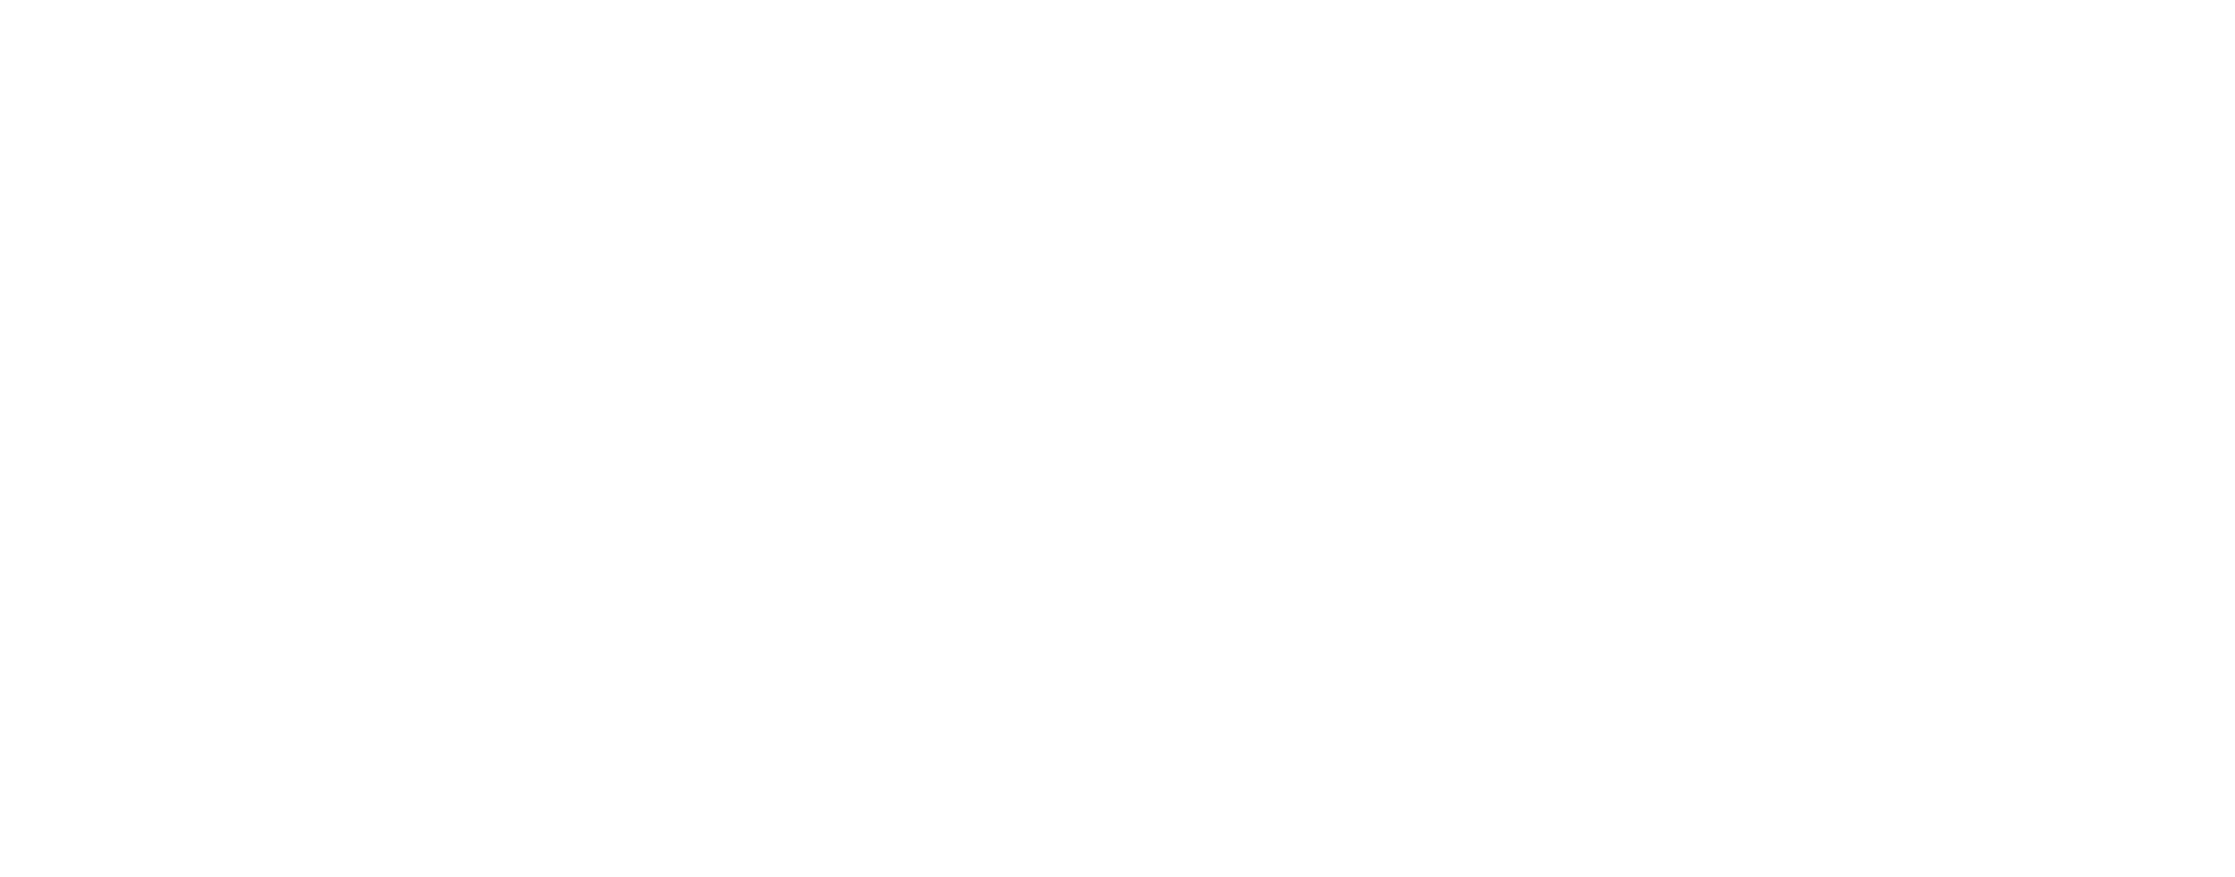 Institut für Erdstrahlen und Elektrosmog